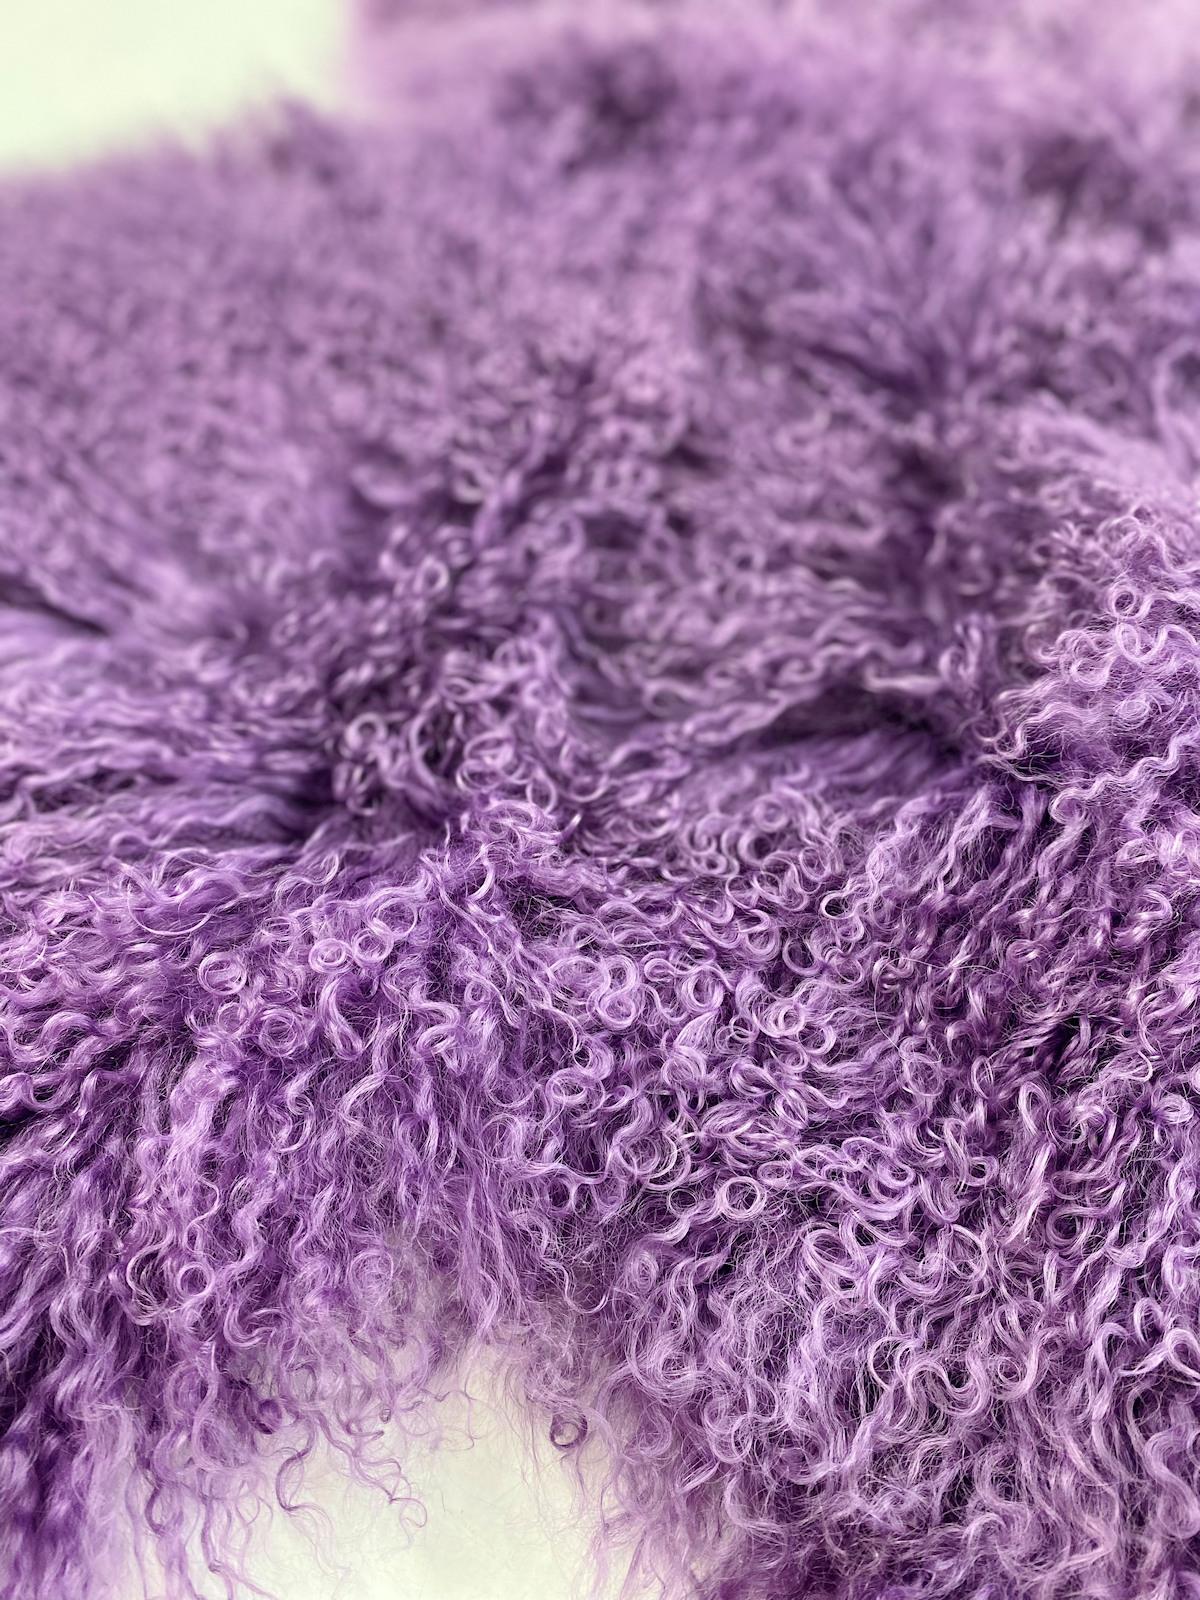 Dieser lilafarbene Fellteppich aus echtem mongolischem Schafsfell ist verführerisch weich, nachhaltig und organisch. Er steht für modernes und stilvolles Design und ist gleichzeitig Ausdruck eines natürlichen Lebensgefühls. 

Mit  eine eklektische